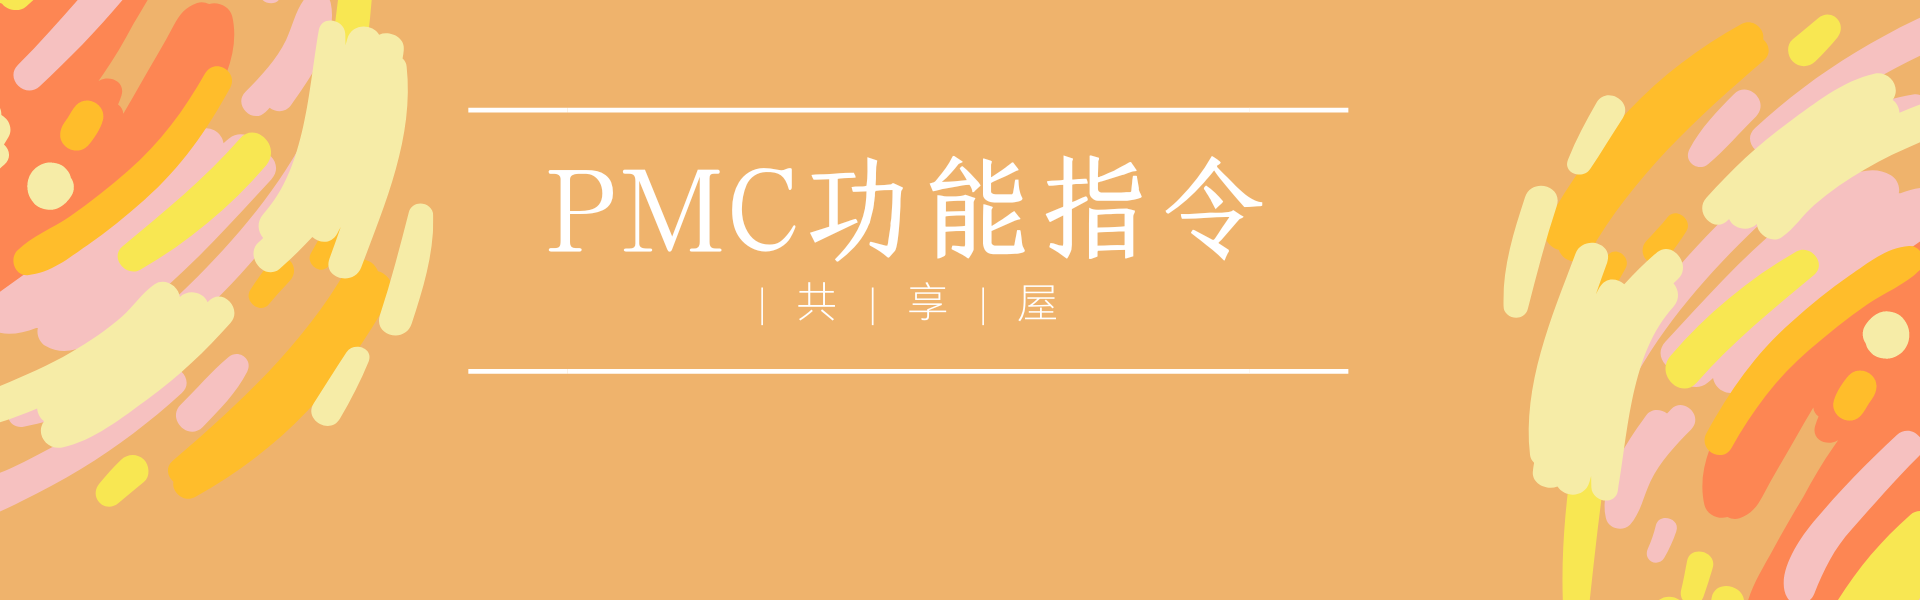 ANUC PMC功能指令之延时接通定时器 TMRC SUB54 | 共享屋|共享屋